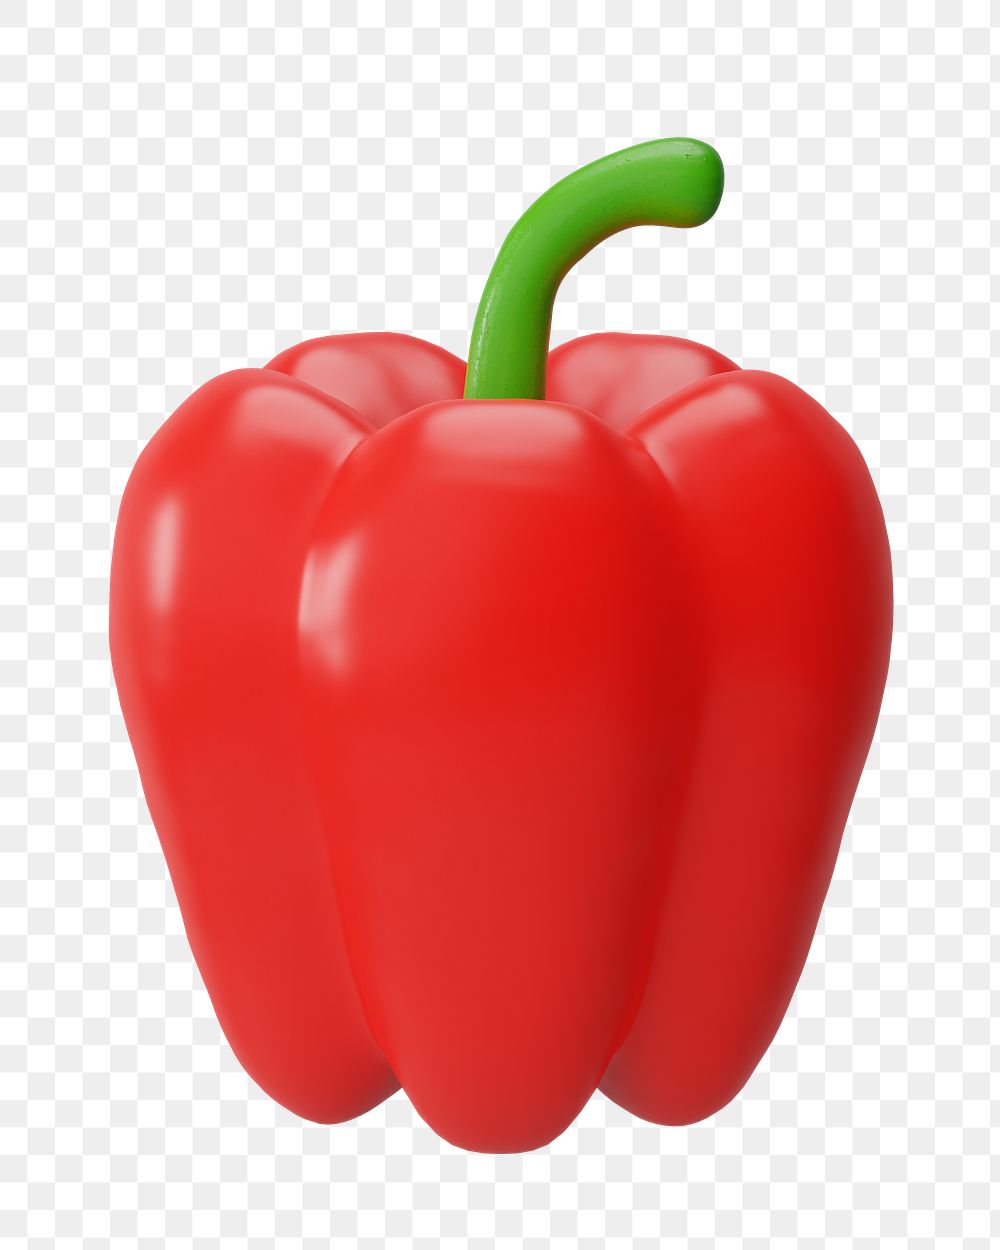 PNG 3D bell pepper vegetable, element illustration, transparent background